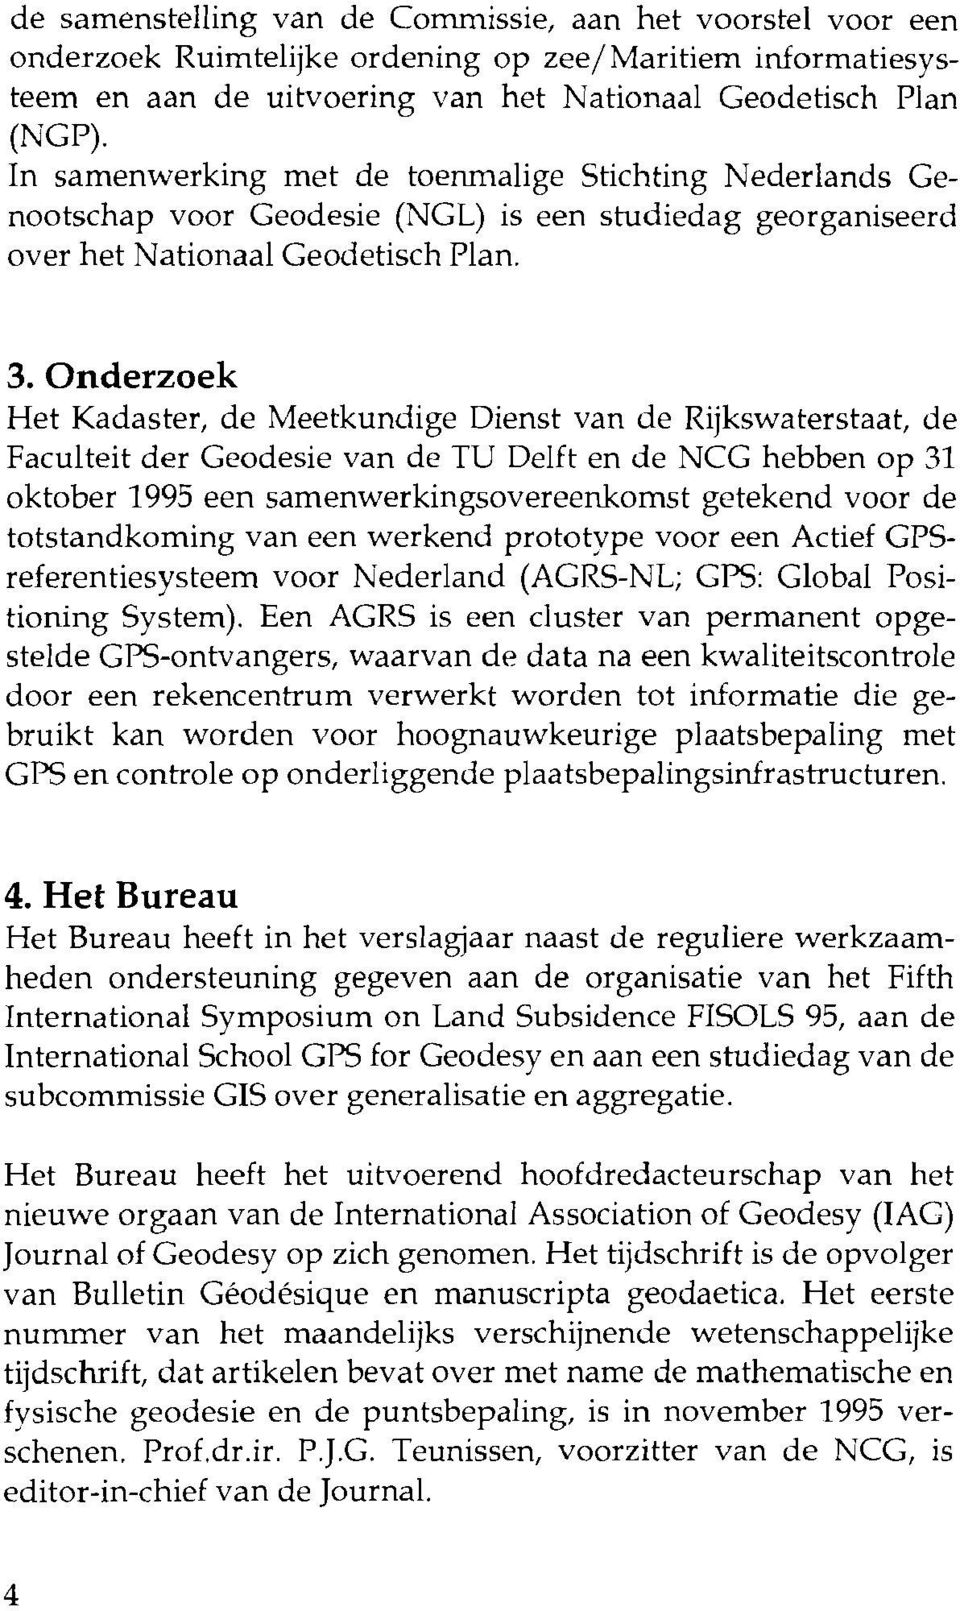 Onderzoek Het Kadaster, de Meetkundige Dienst van de Rijkswaterstaat, de Faculteit der Geodesie van de TU Delft en de NCG hebben op 31 oktober 1995 een samenwerkingsovereenkomst getekend voor de